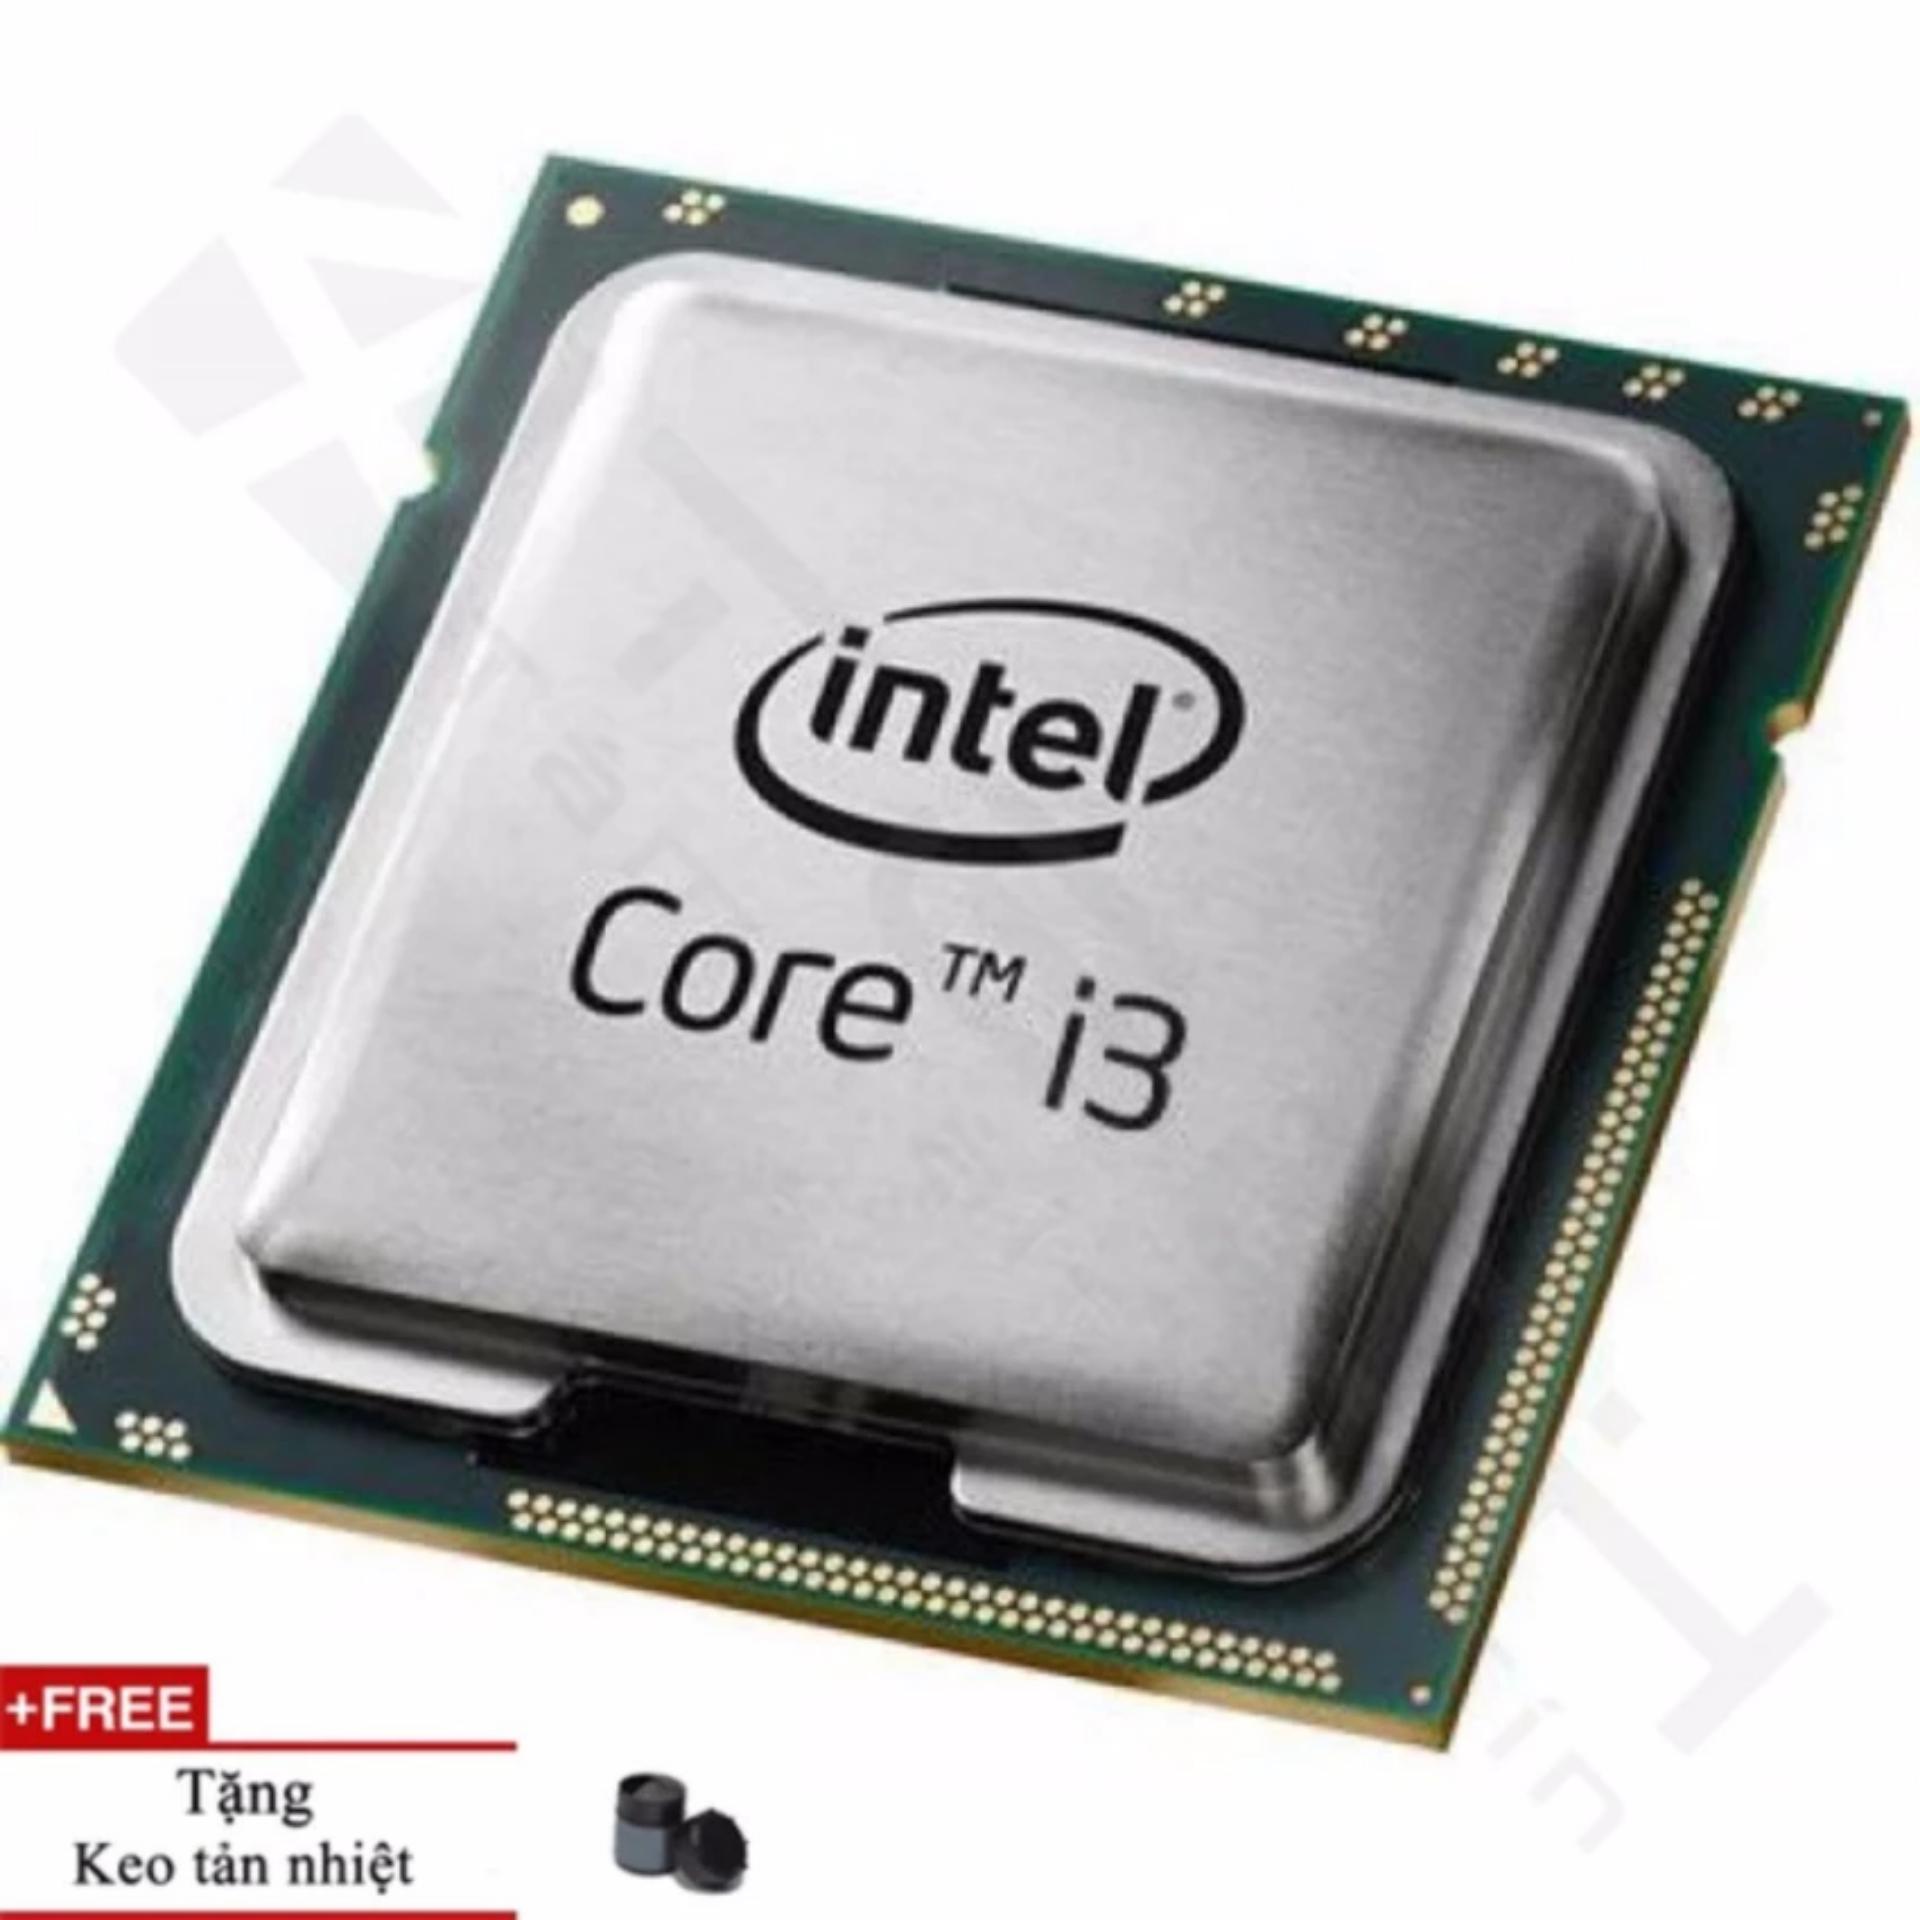 Bộ vi xử lý Intel Core i3 3220 3.30GHz(up to 3.8GHz, 2 lõi, 4 luồng), Bus 1066/1333/ 1600MHz, Cache 3MB...